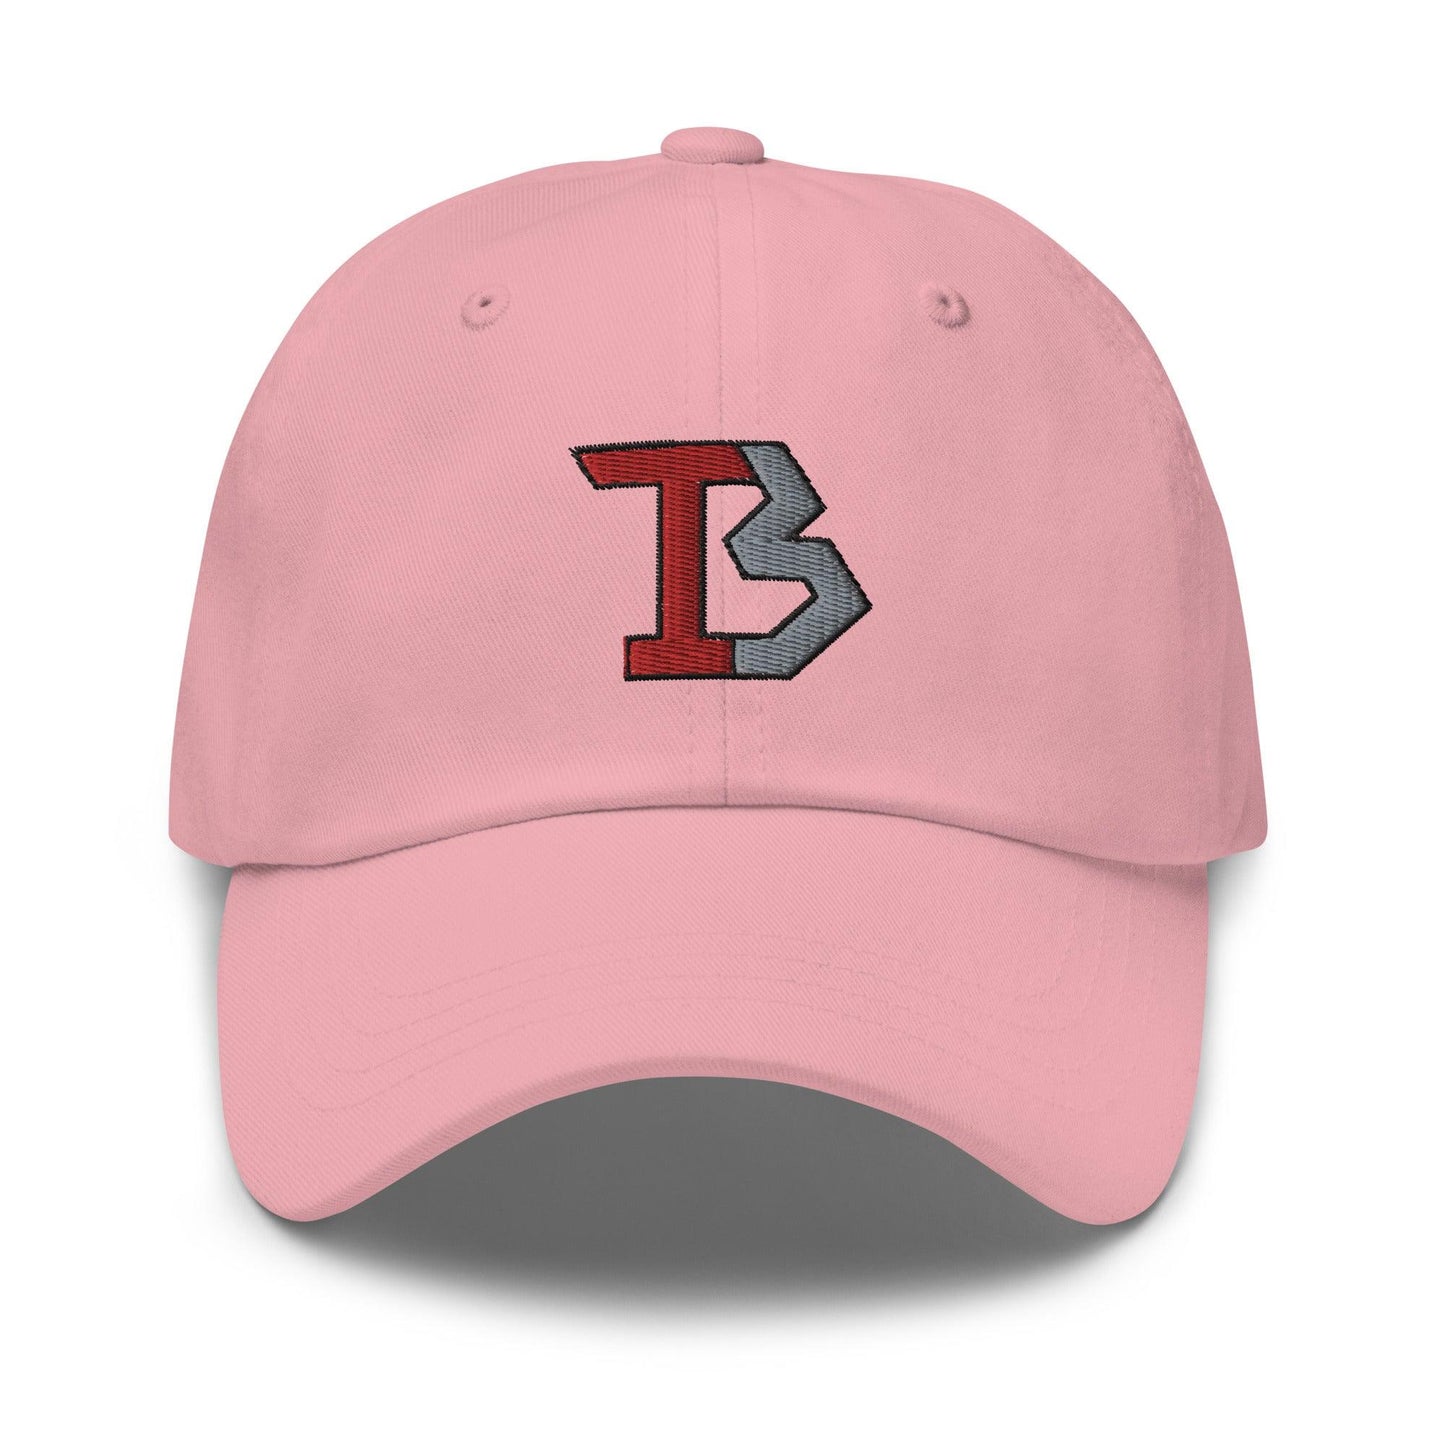 Tatum Bethune "Elite" hat - Fan Arch